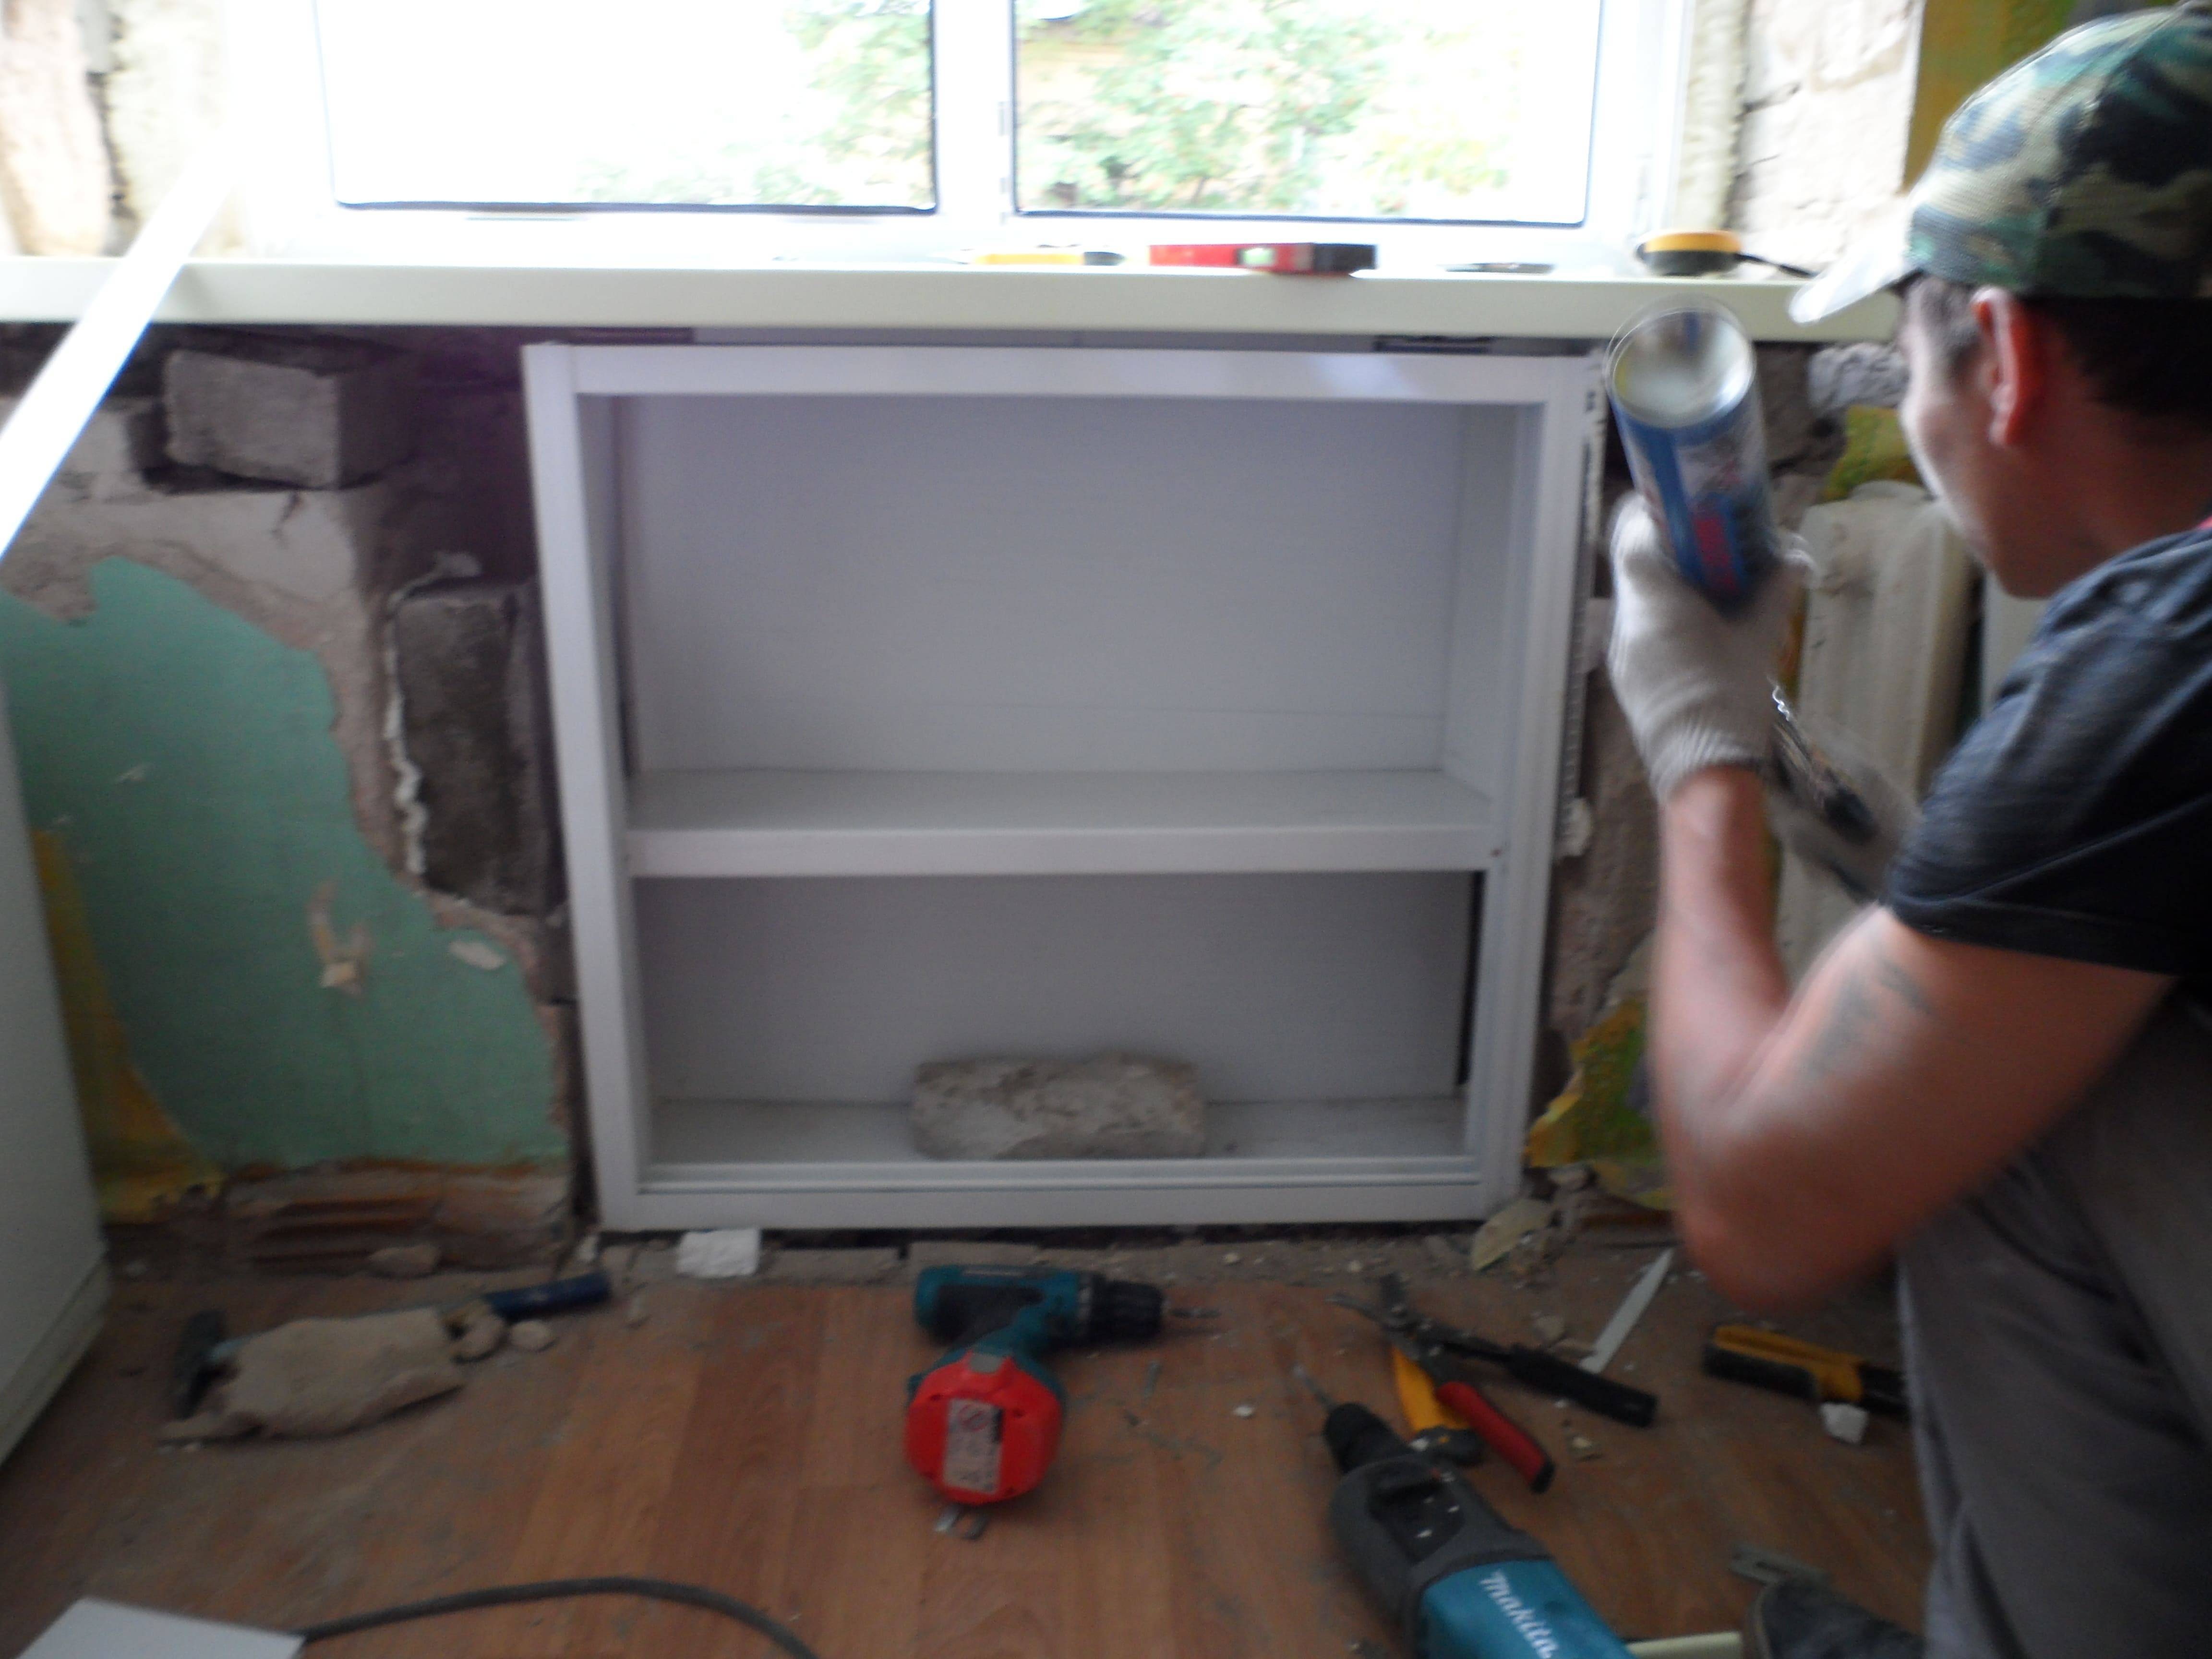 Шкаф под подоконником на кухне: реставрация старого хрущевского холодильника, как сделать шкафчик